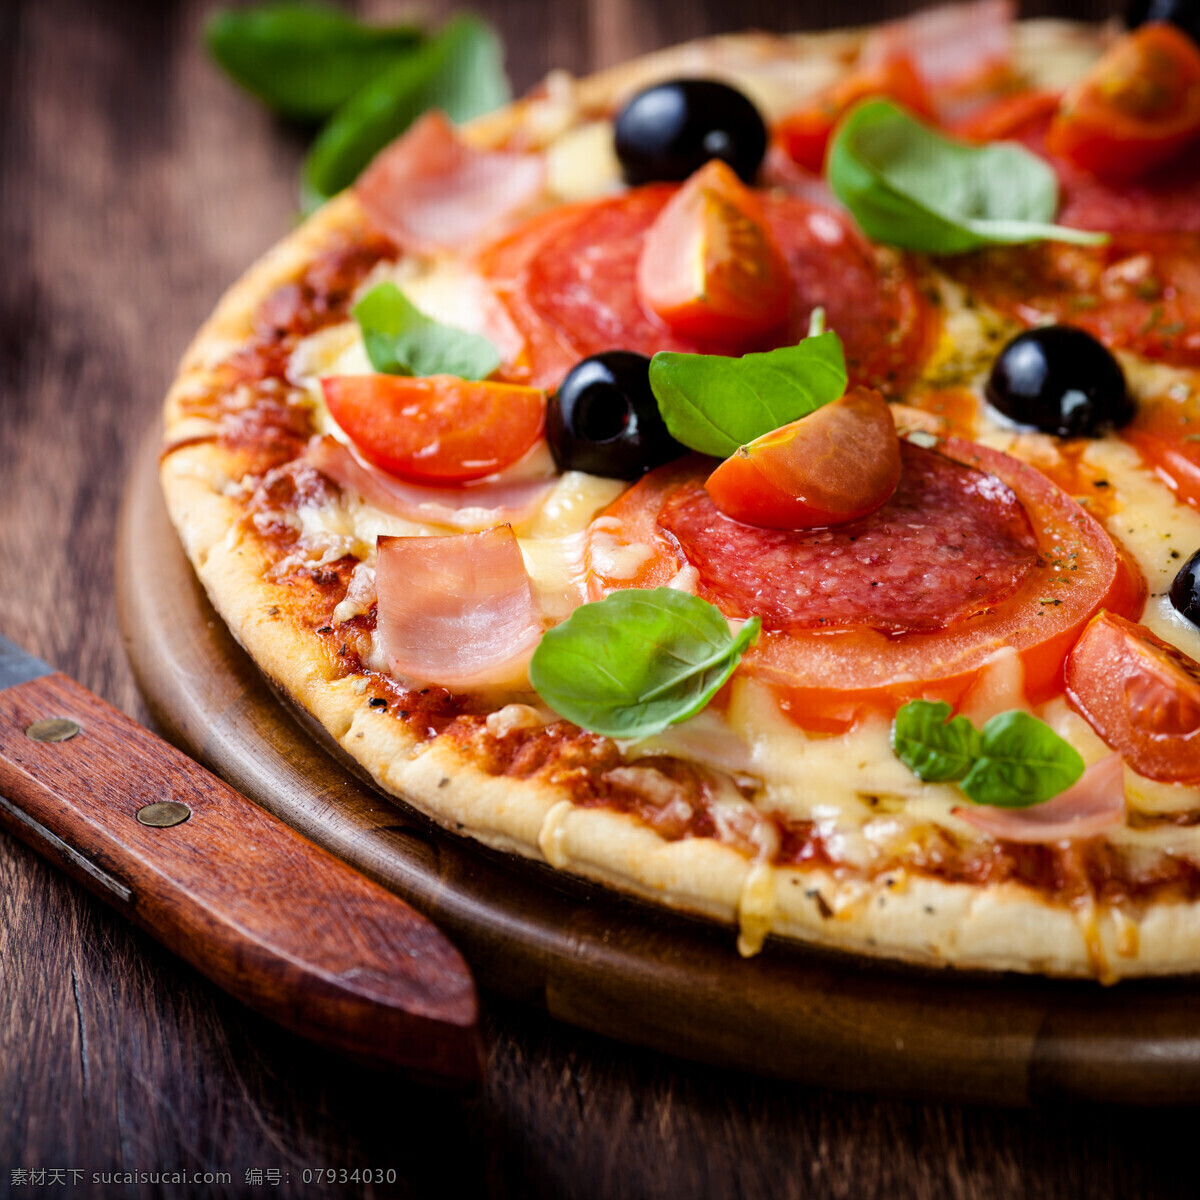 木板上的披萨 木板 披萨 披萨美食 意大利披萨 国外美食 美味 外国美食 餐饮美食 黑色